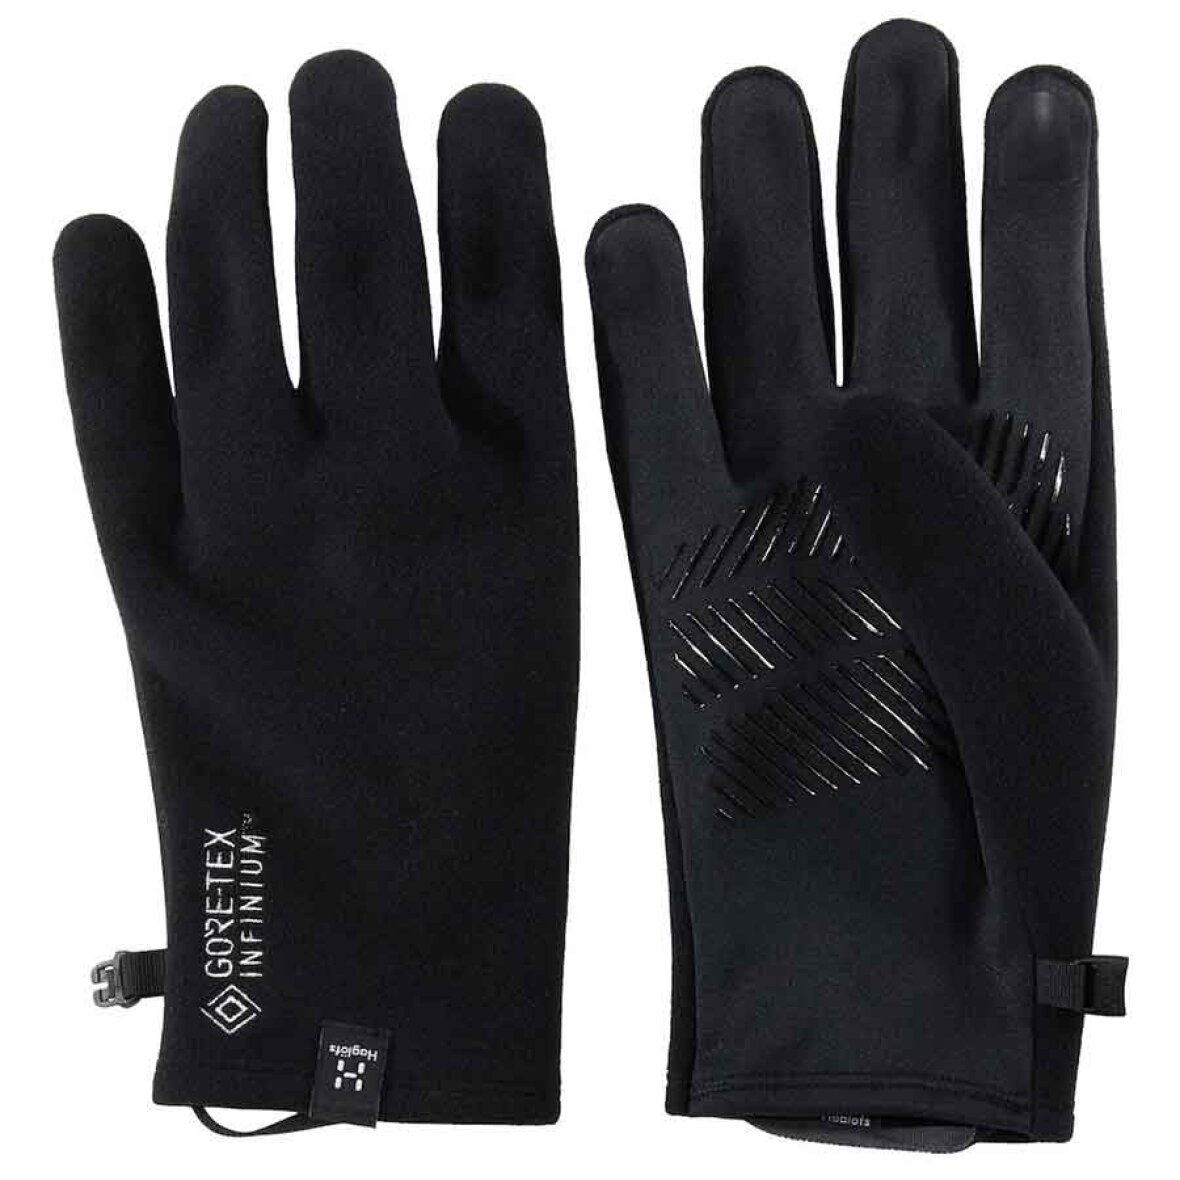 Bow Glove black | Lette og alsidige handsker - 50g | Køb nu